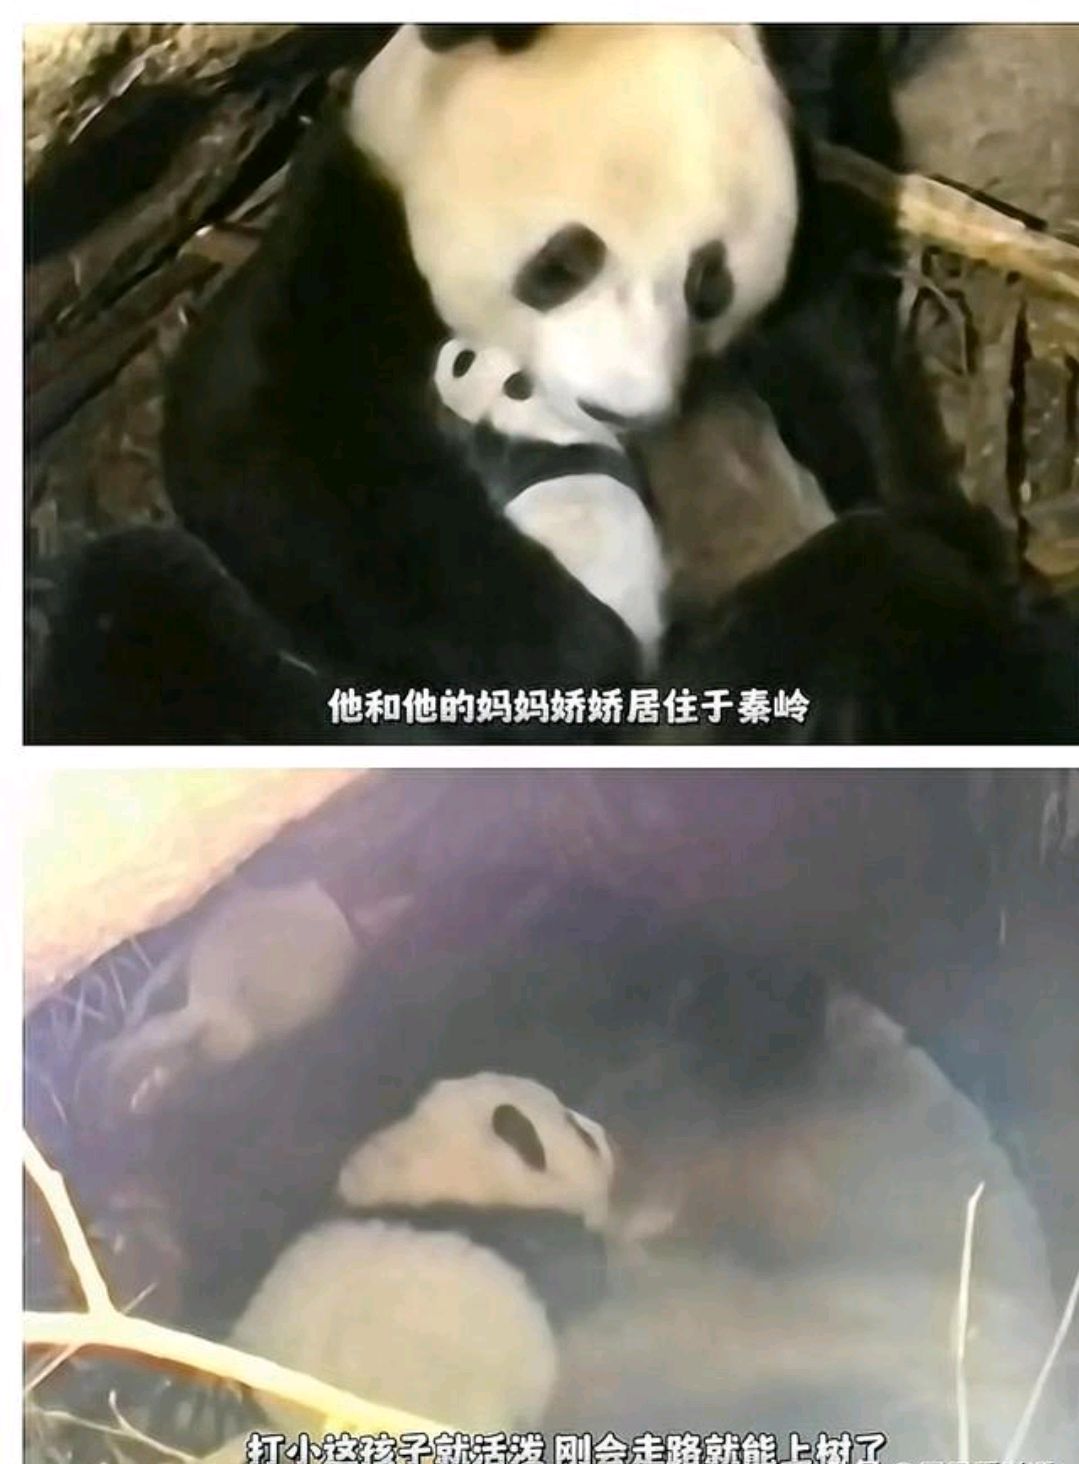 秦岭小霸王熊猫虎子图片